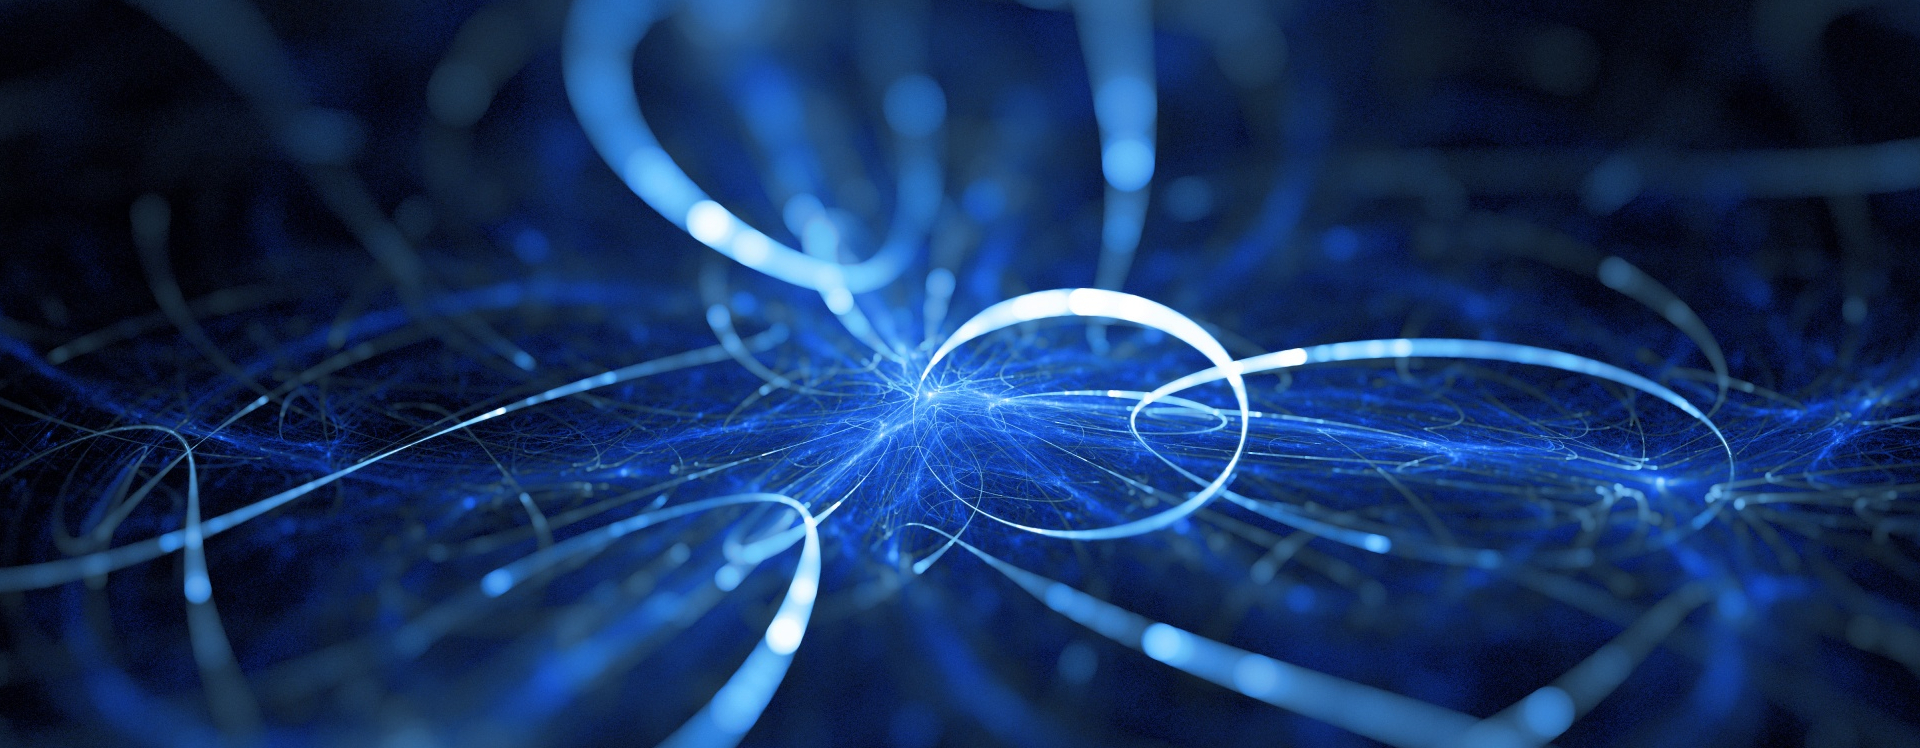 Imagem abstrata de rede contendo fios azuis e brilhantes